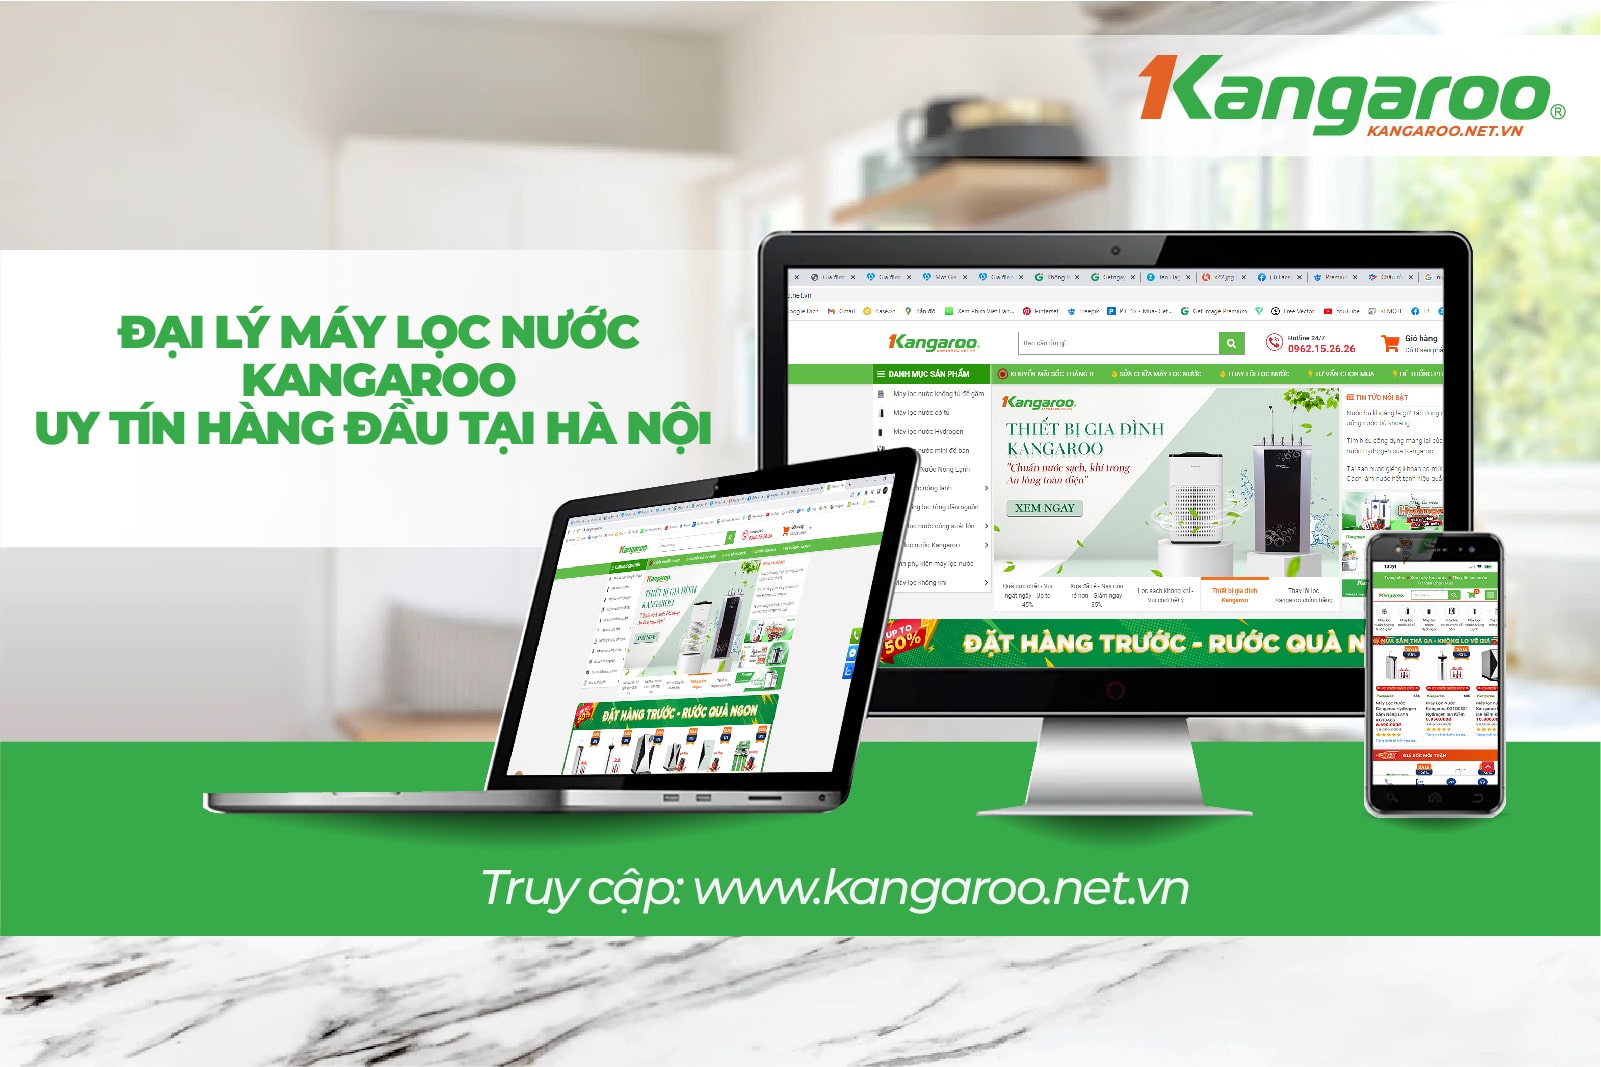 Kangaroo.net.vn địa chỉ mua máy lọc nước Kangaroo KG109A uy tín  